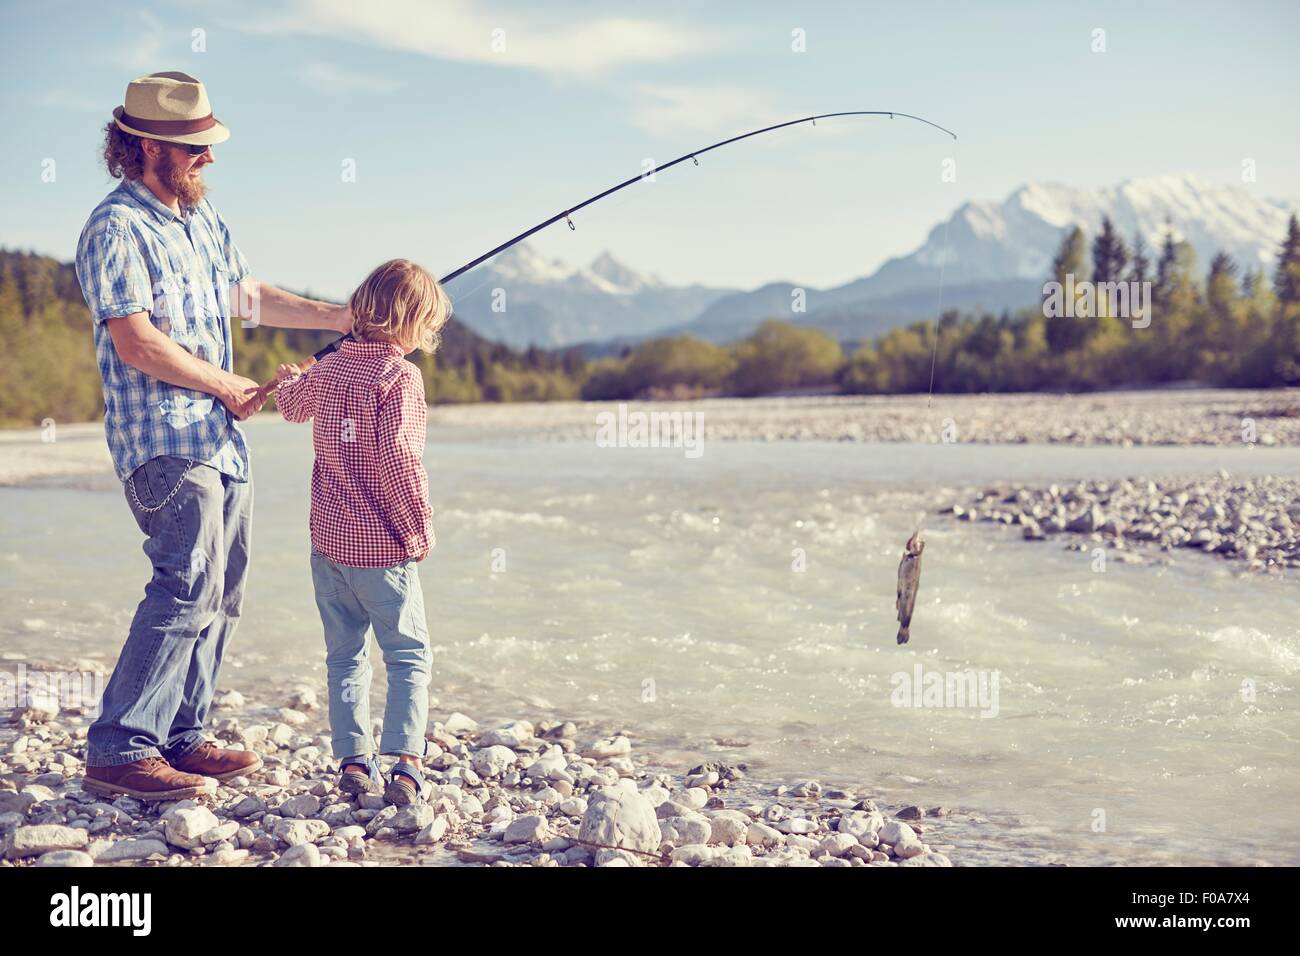 Mitte erwachsenen Mann und der junge Fluss halten Angelrute mit Fisch befestigt, Wallgau, Bayern, Deutschland Stockfoto